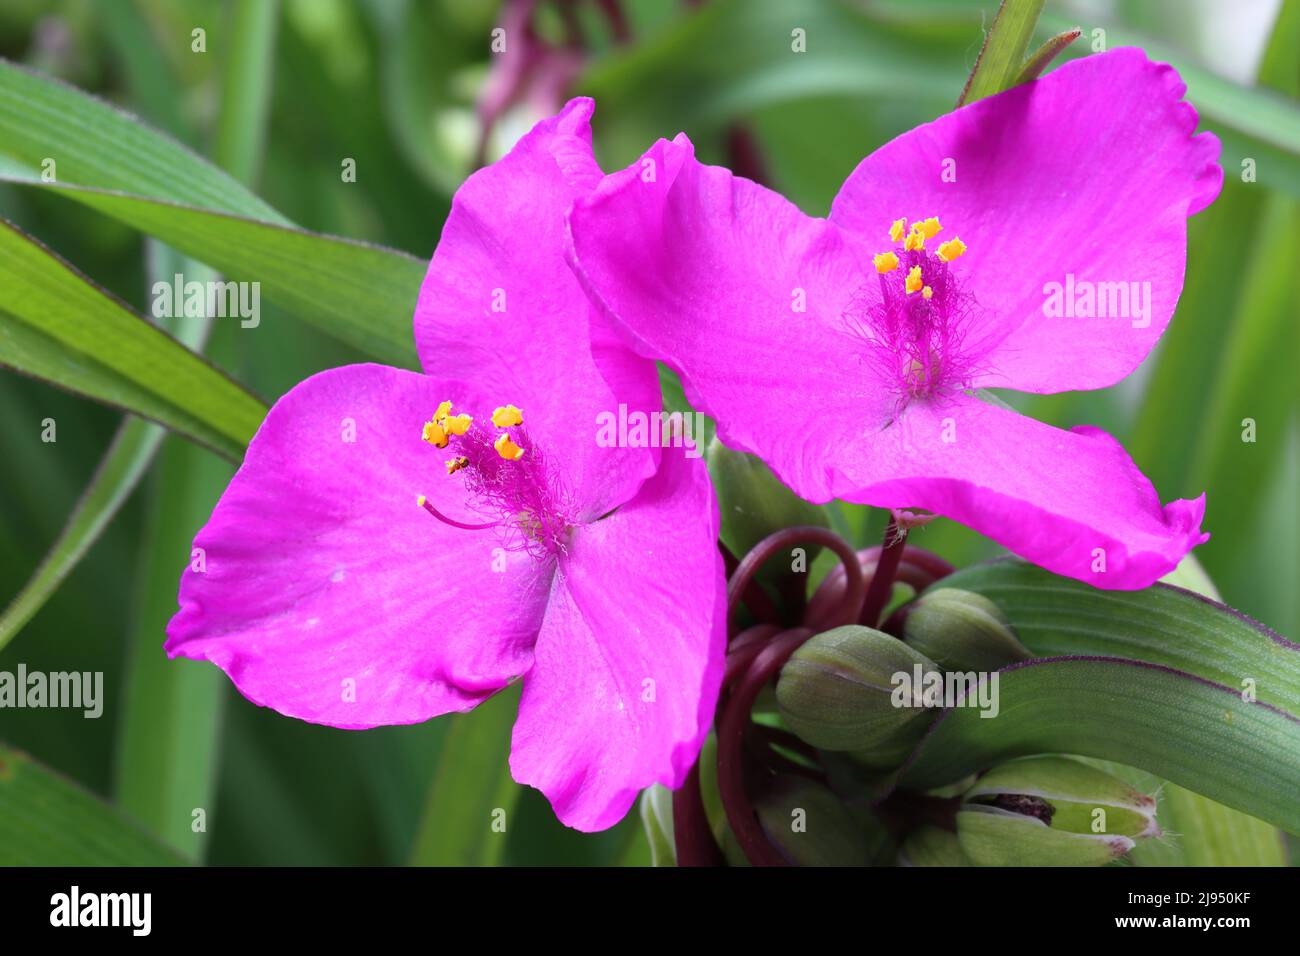 primer plano de dos flores de tradescantia rosa Foto de stock